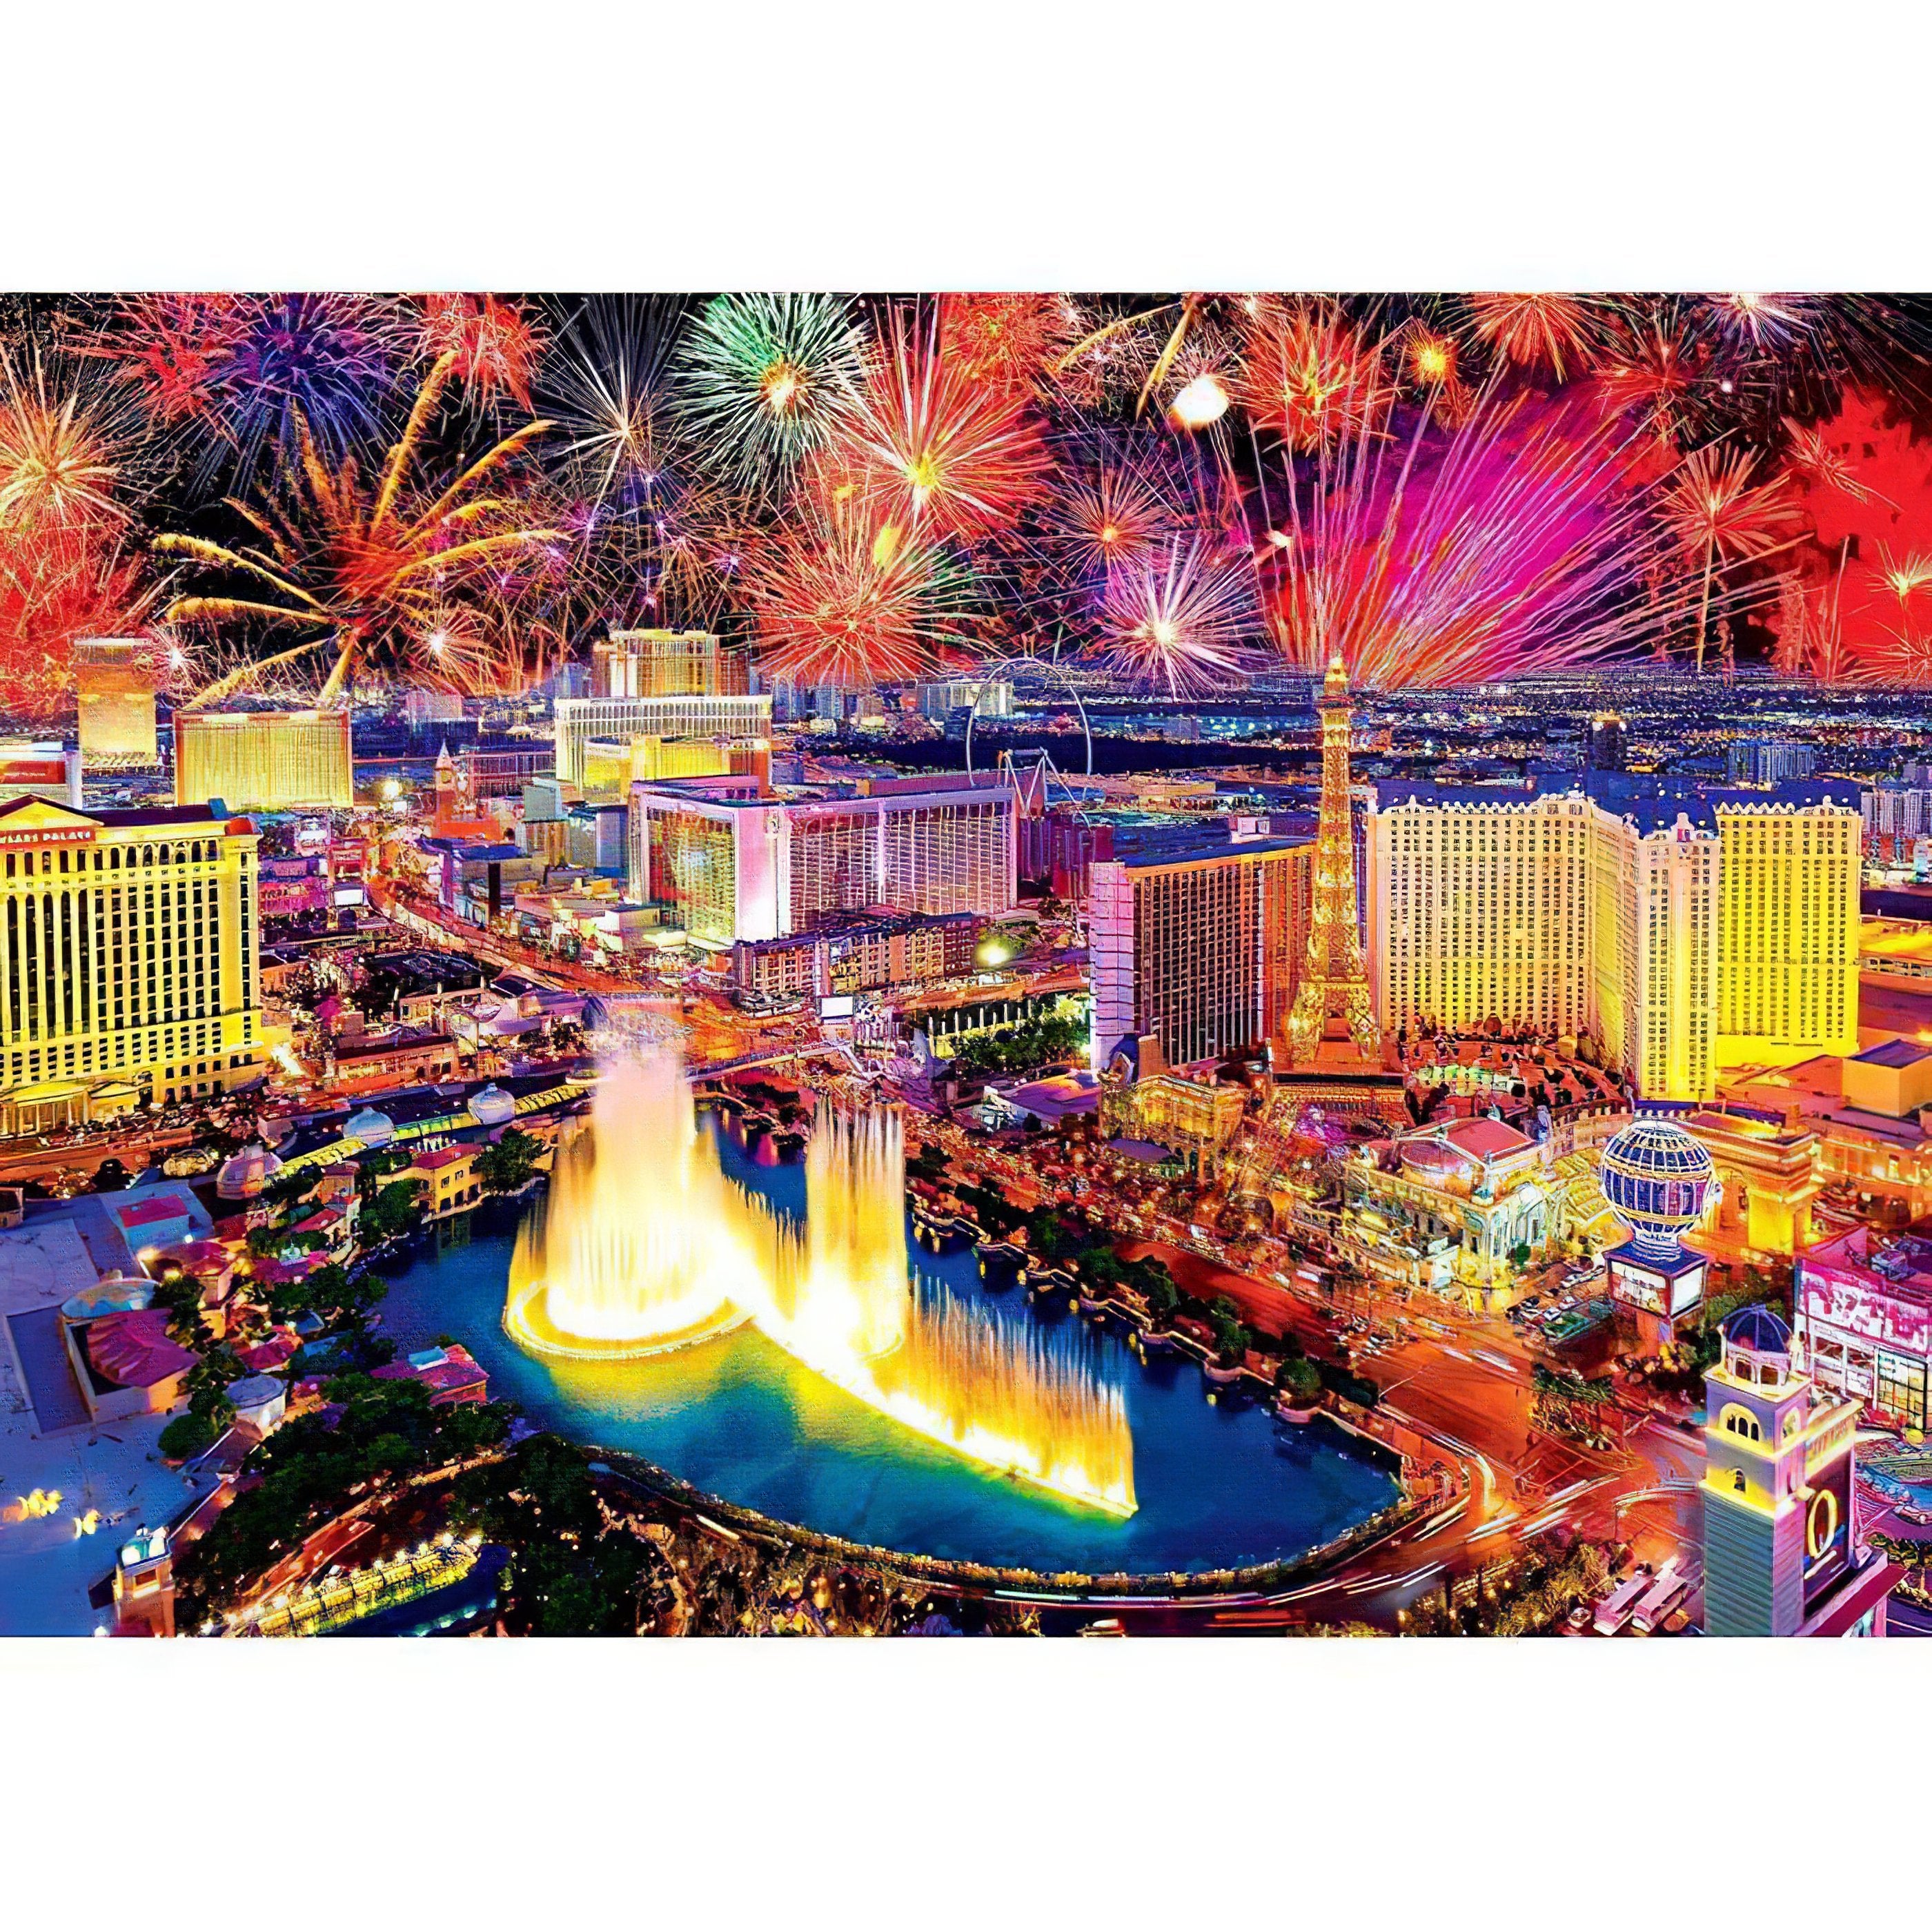 Fireworks In Las Vegas